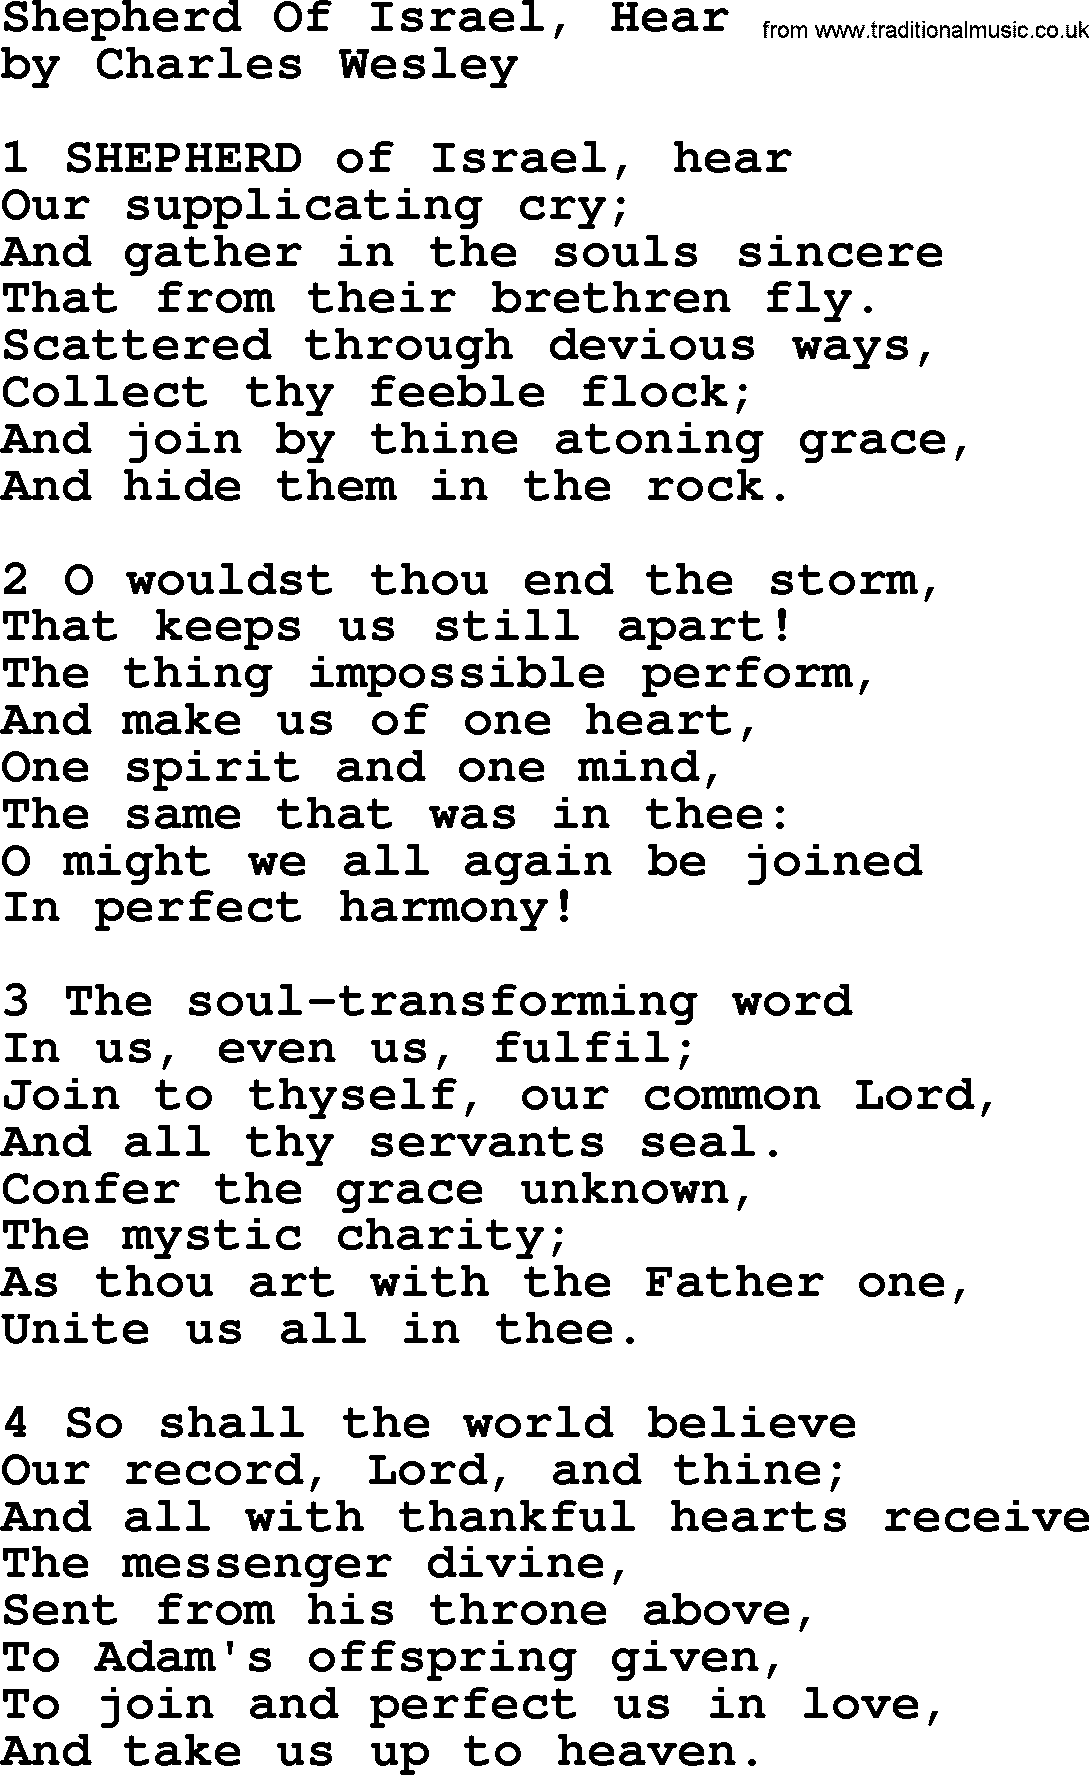 Charles Wesley hymn: Shepherd Of Israel, Hear, lyrics